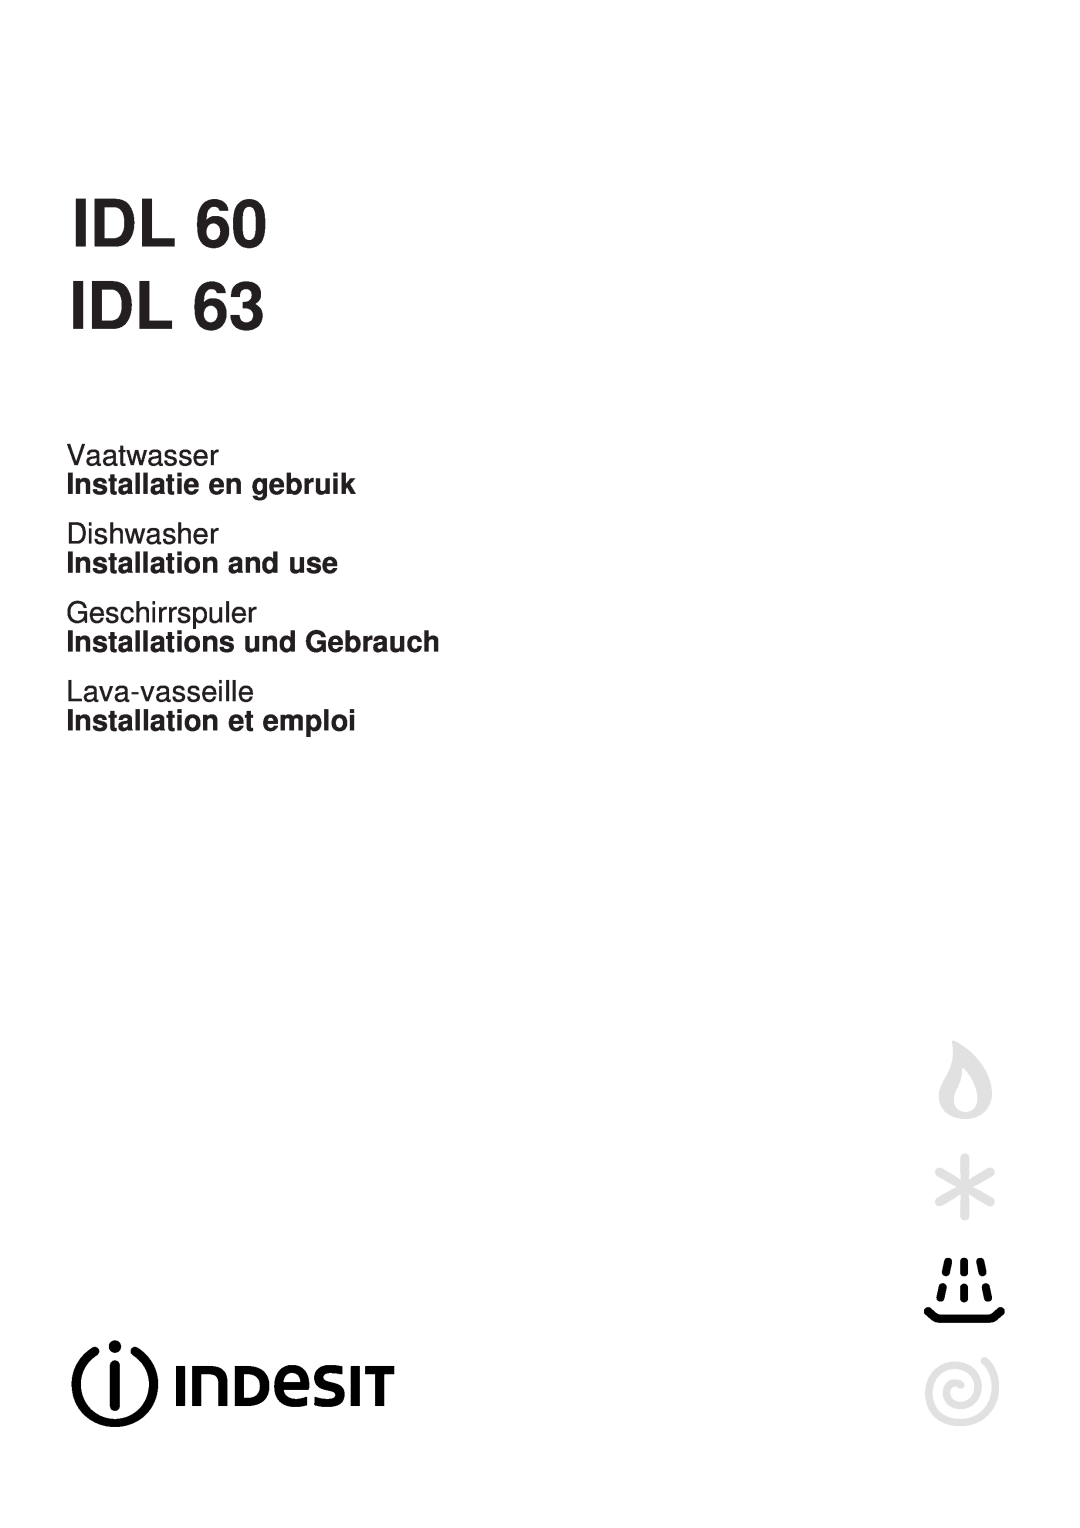 Indesit IDL 63 manual Idl Idl, Vaatwasser, Installatie en gebruik, Dishwasher, Installation and use, Geschirrspuler 